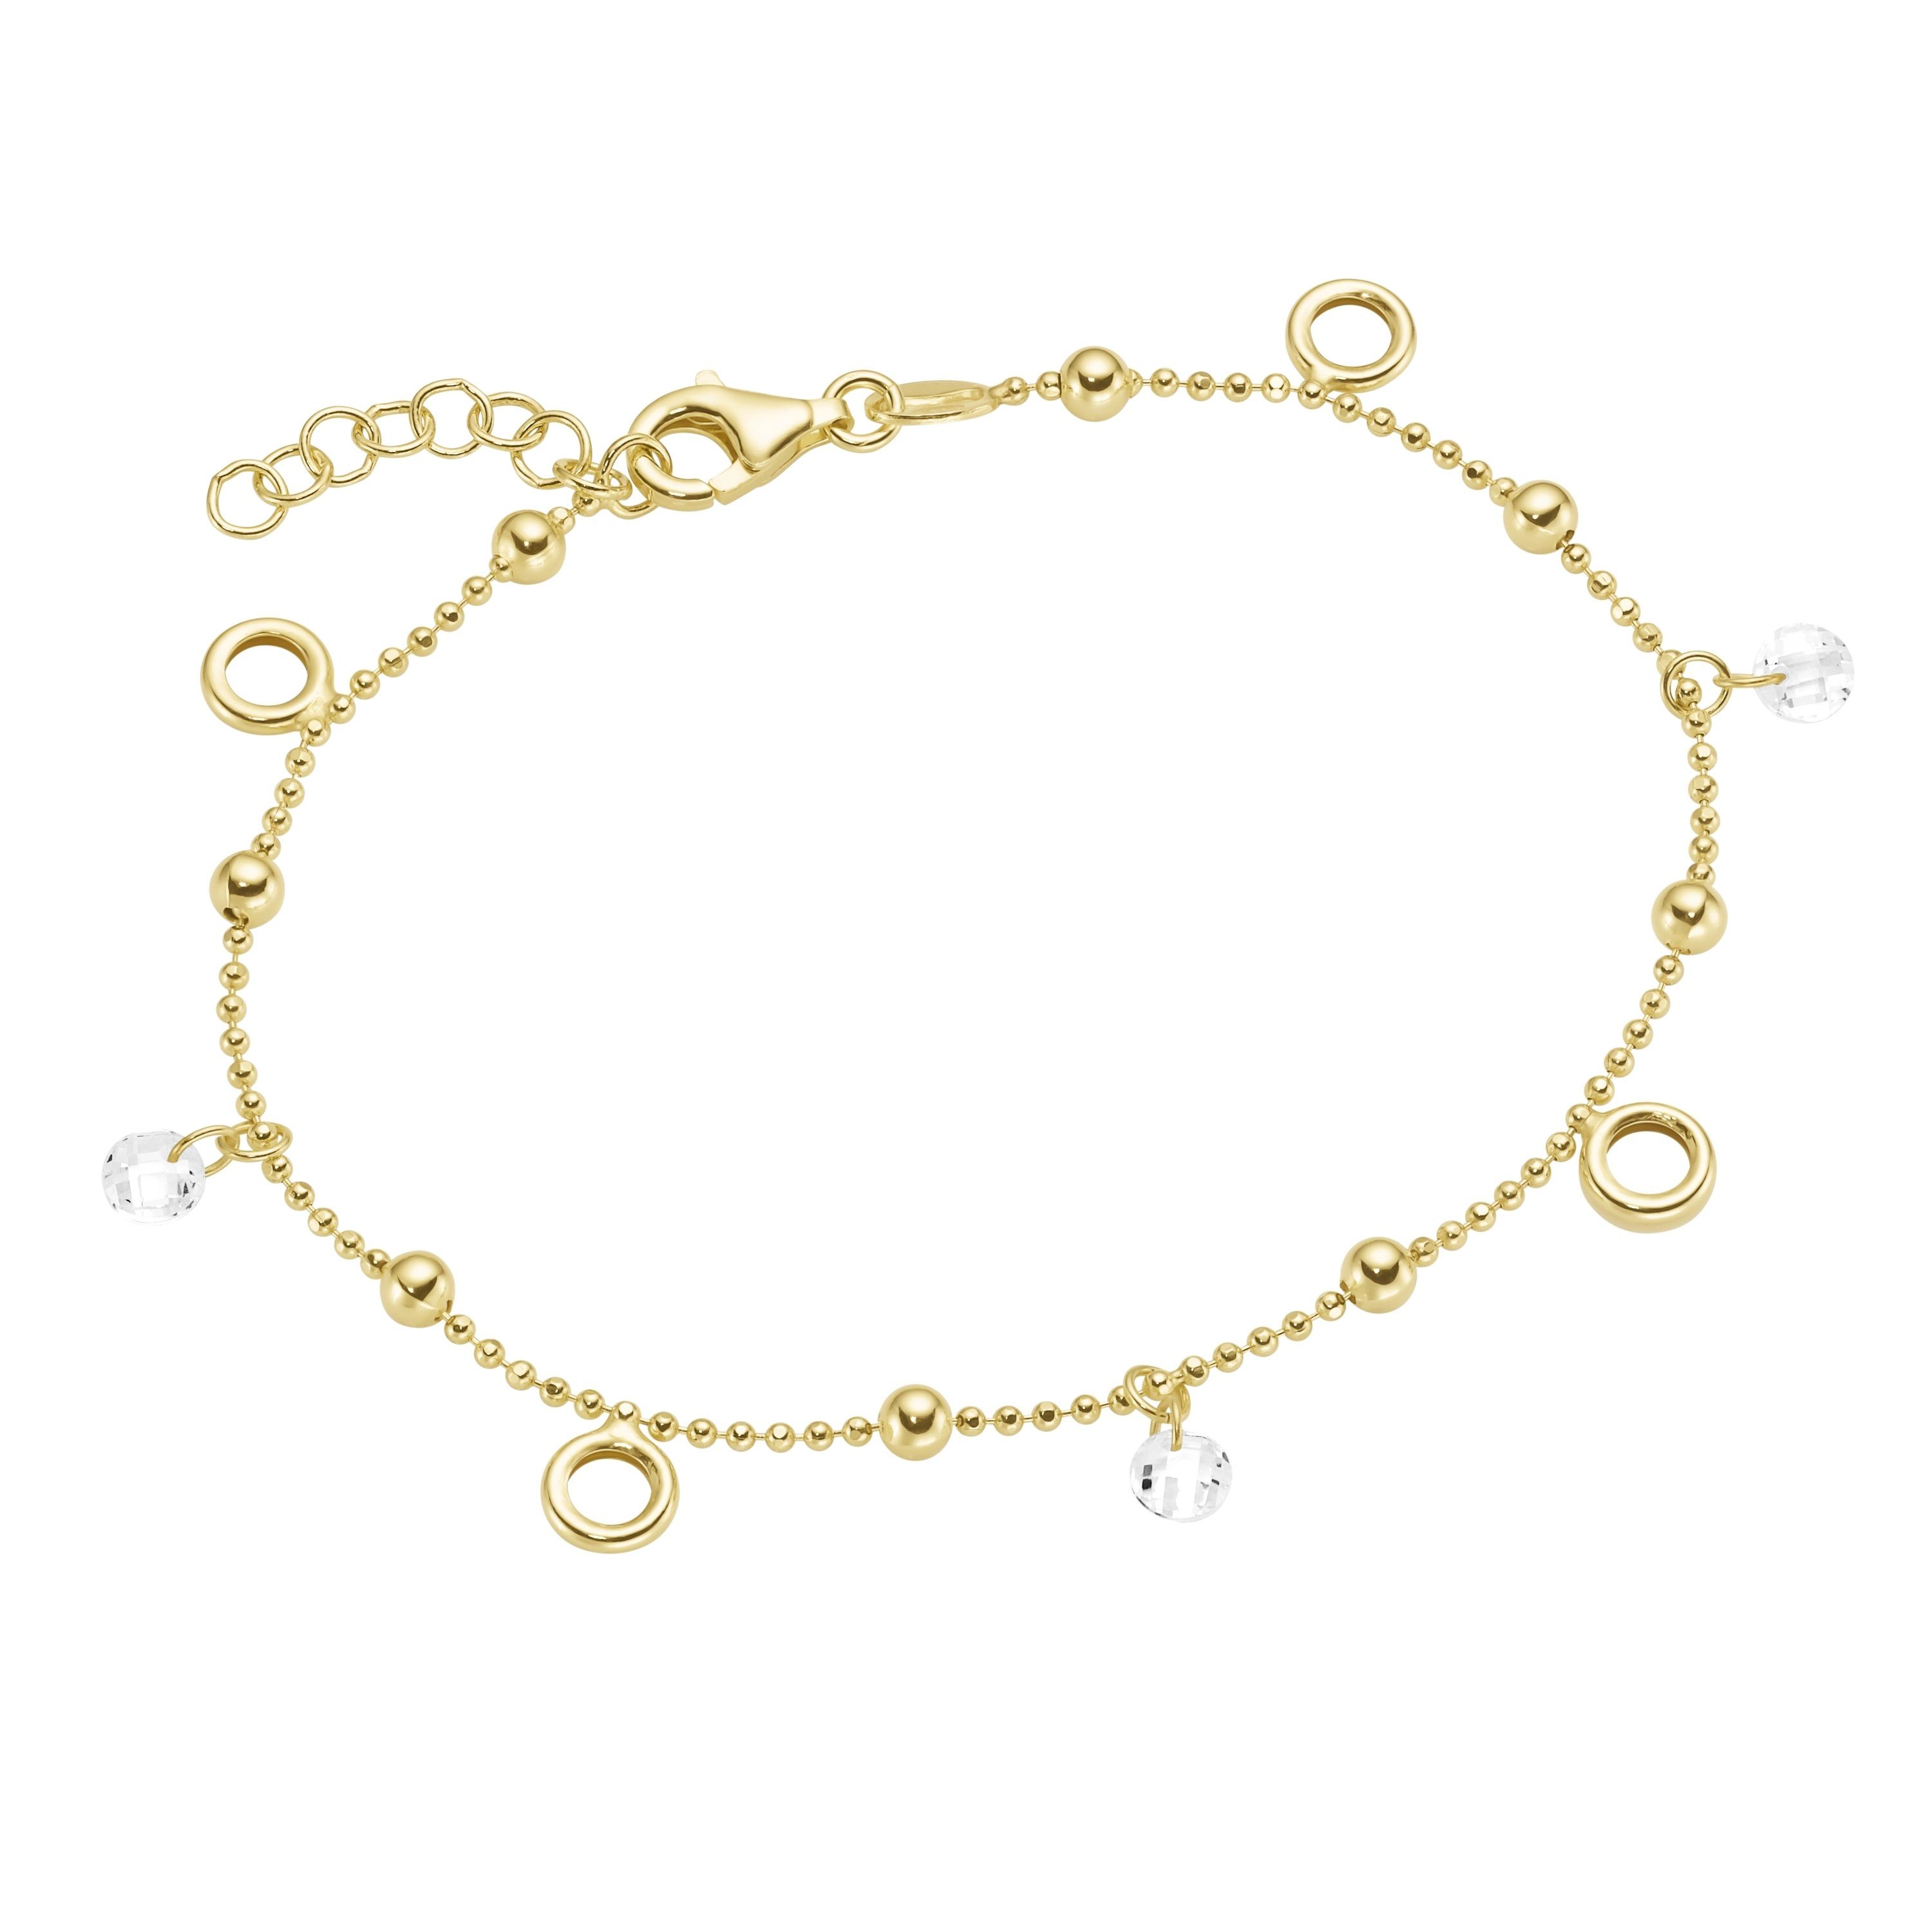 Damen Schmuck Smart Jewel Armband mit Kugeln, Zirkonia und Ringen, Silber 925